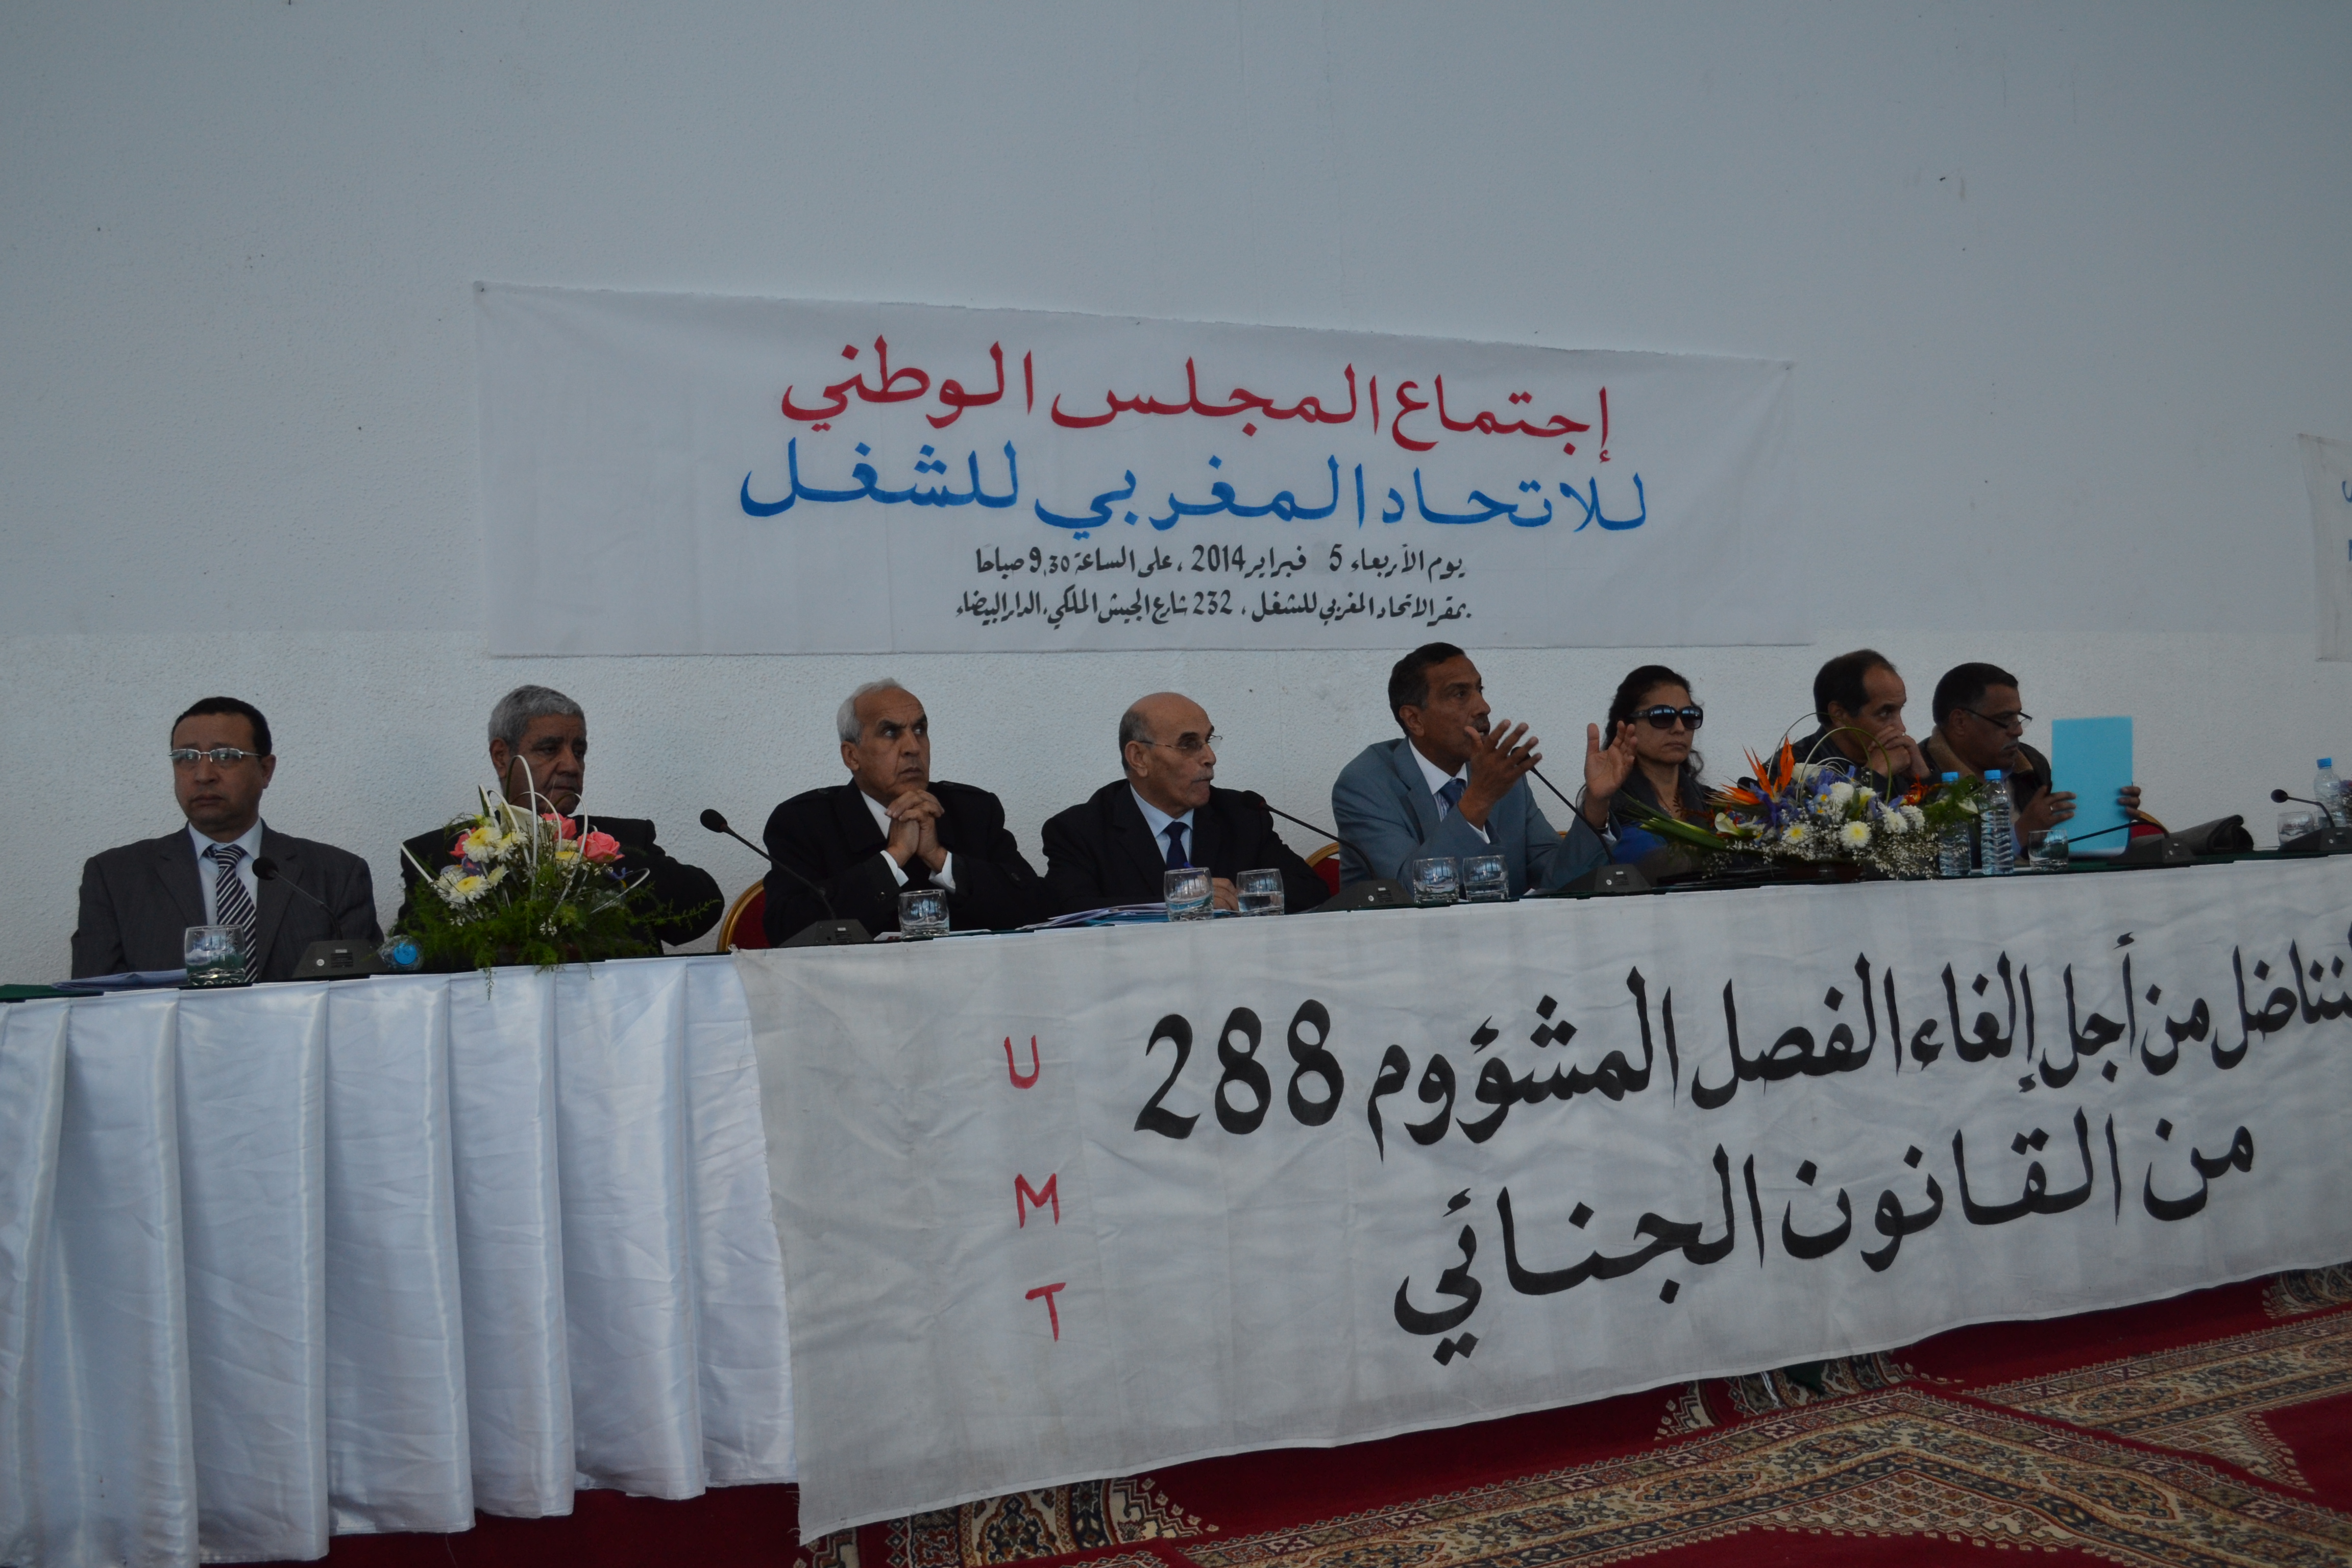 بـيــــان المجلس الوطني للاتحاد المغربي للشغل المنعقد بالمقر المركزي للاتحاد يوم الأربعاء 5 فبراير 2014‎